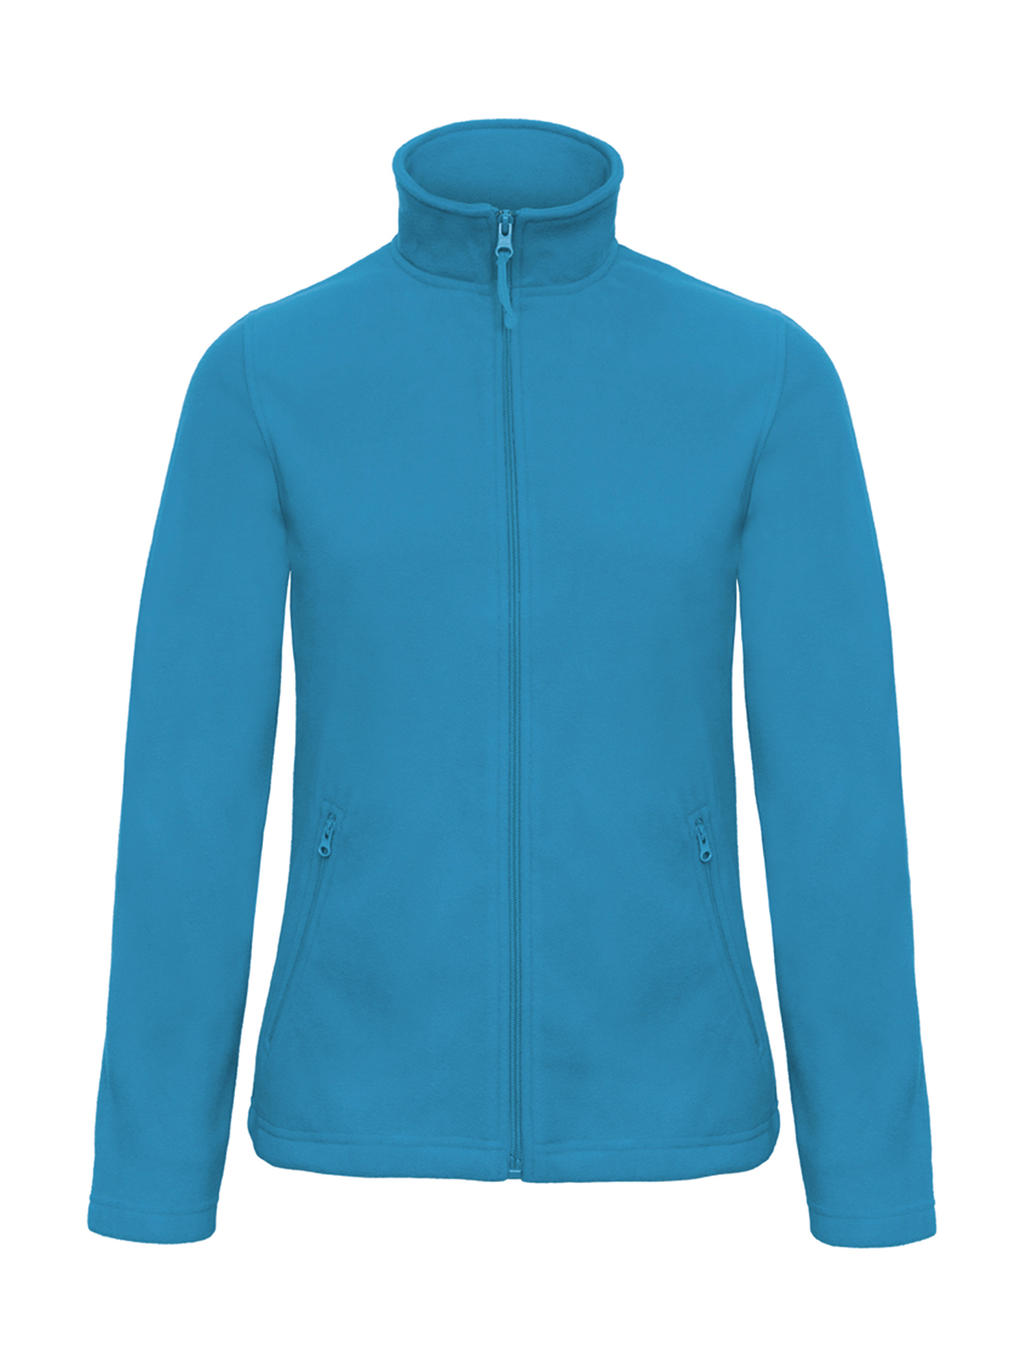 Mikina dámská B&C Micro Fleece - světle modrá, M